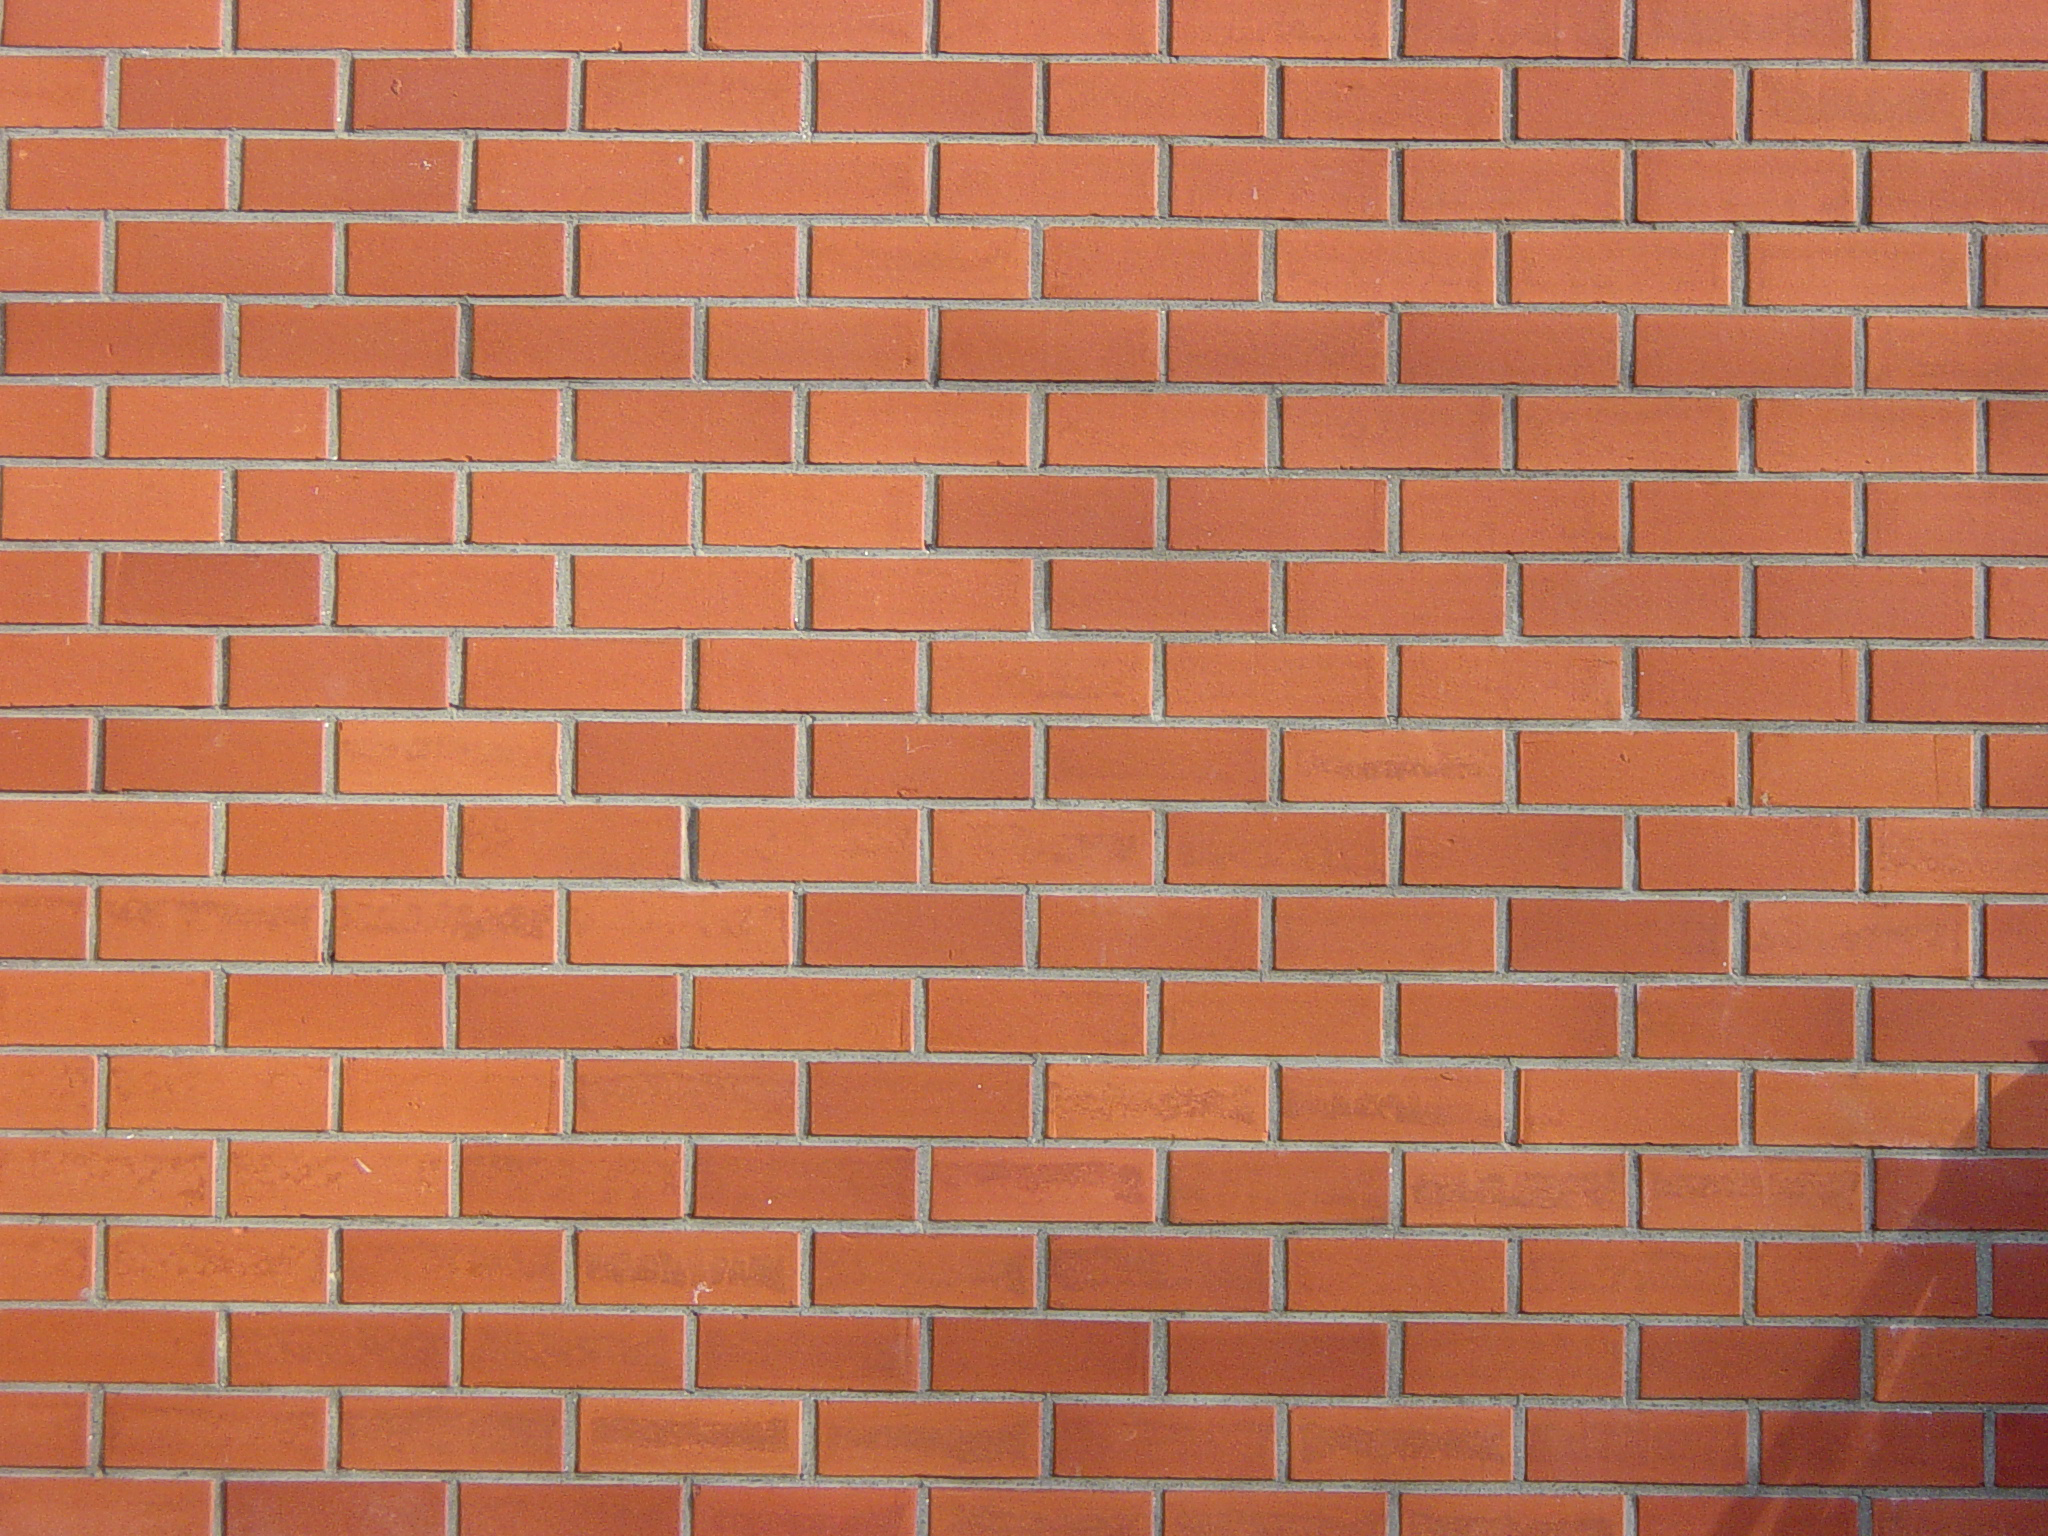 Large Brick Background Image On